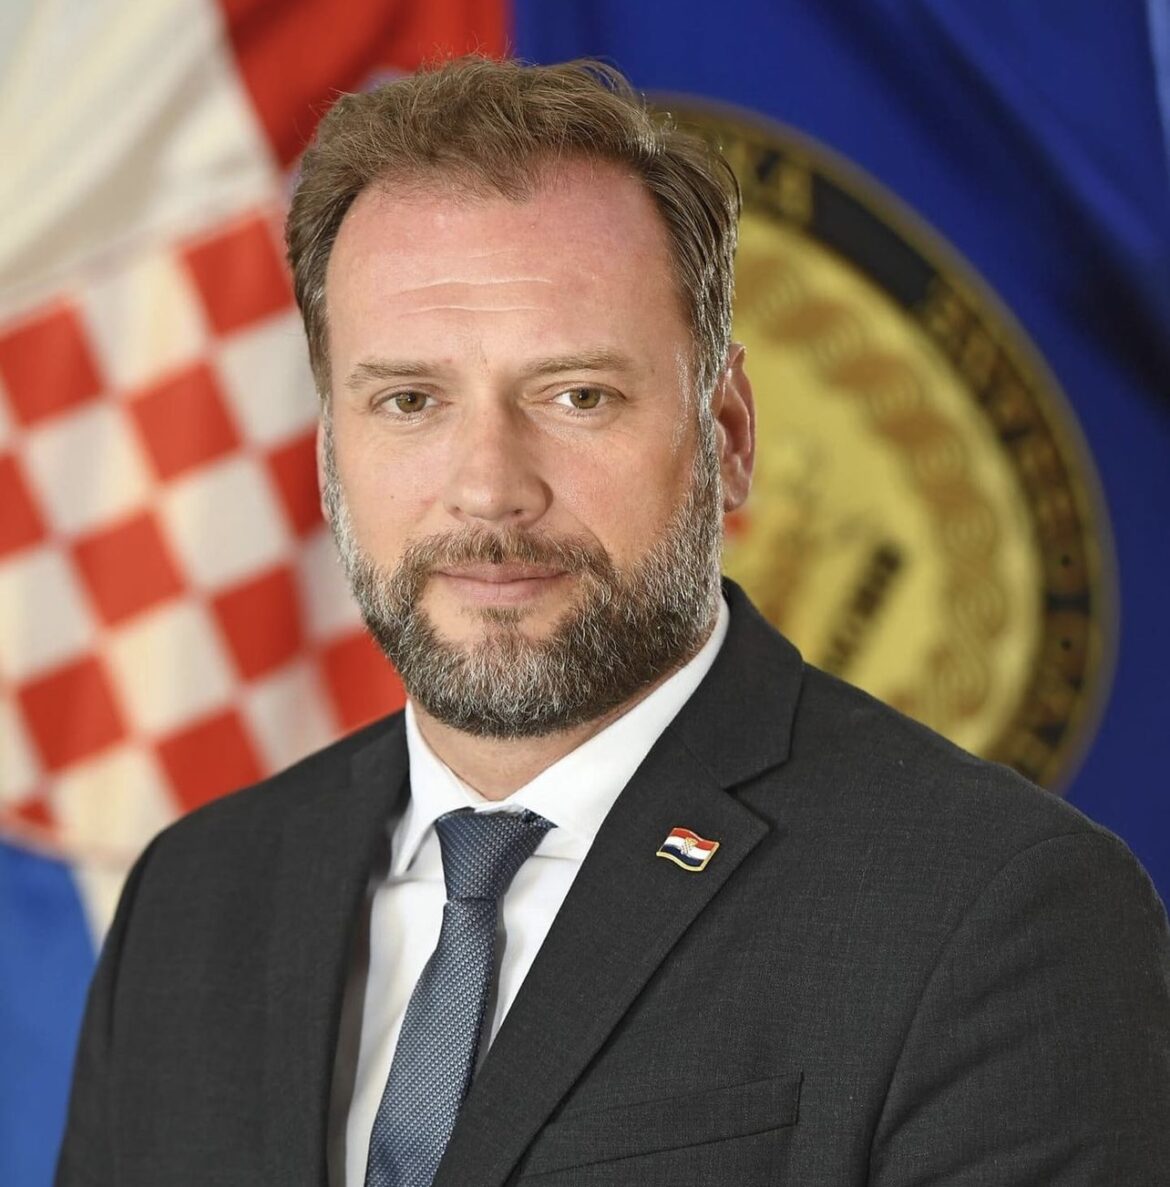 PLENKOVIĆ SMENIO BANOŽIĆA! Hrvatski ministar preticao kombi i izazvao nesreću, POGINUO OTAC DVOJE DECE